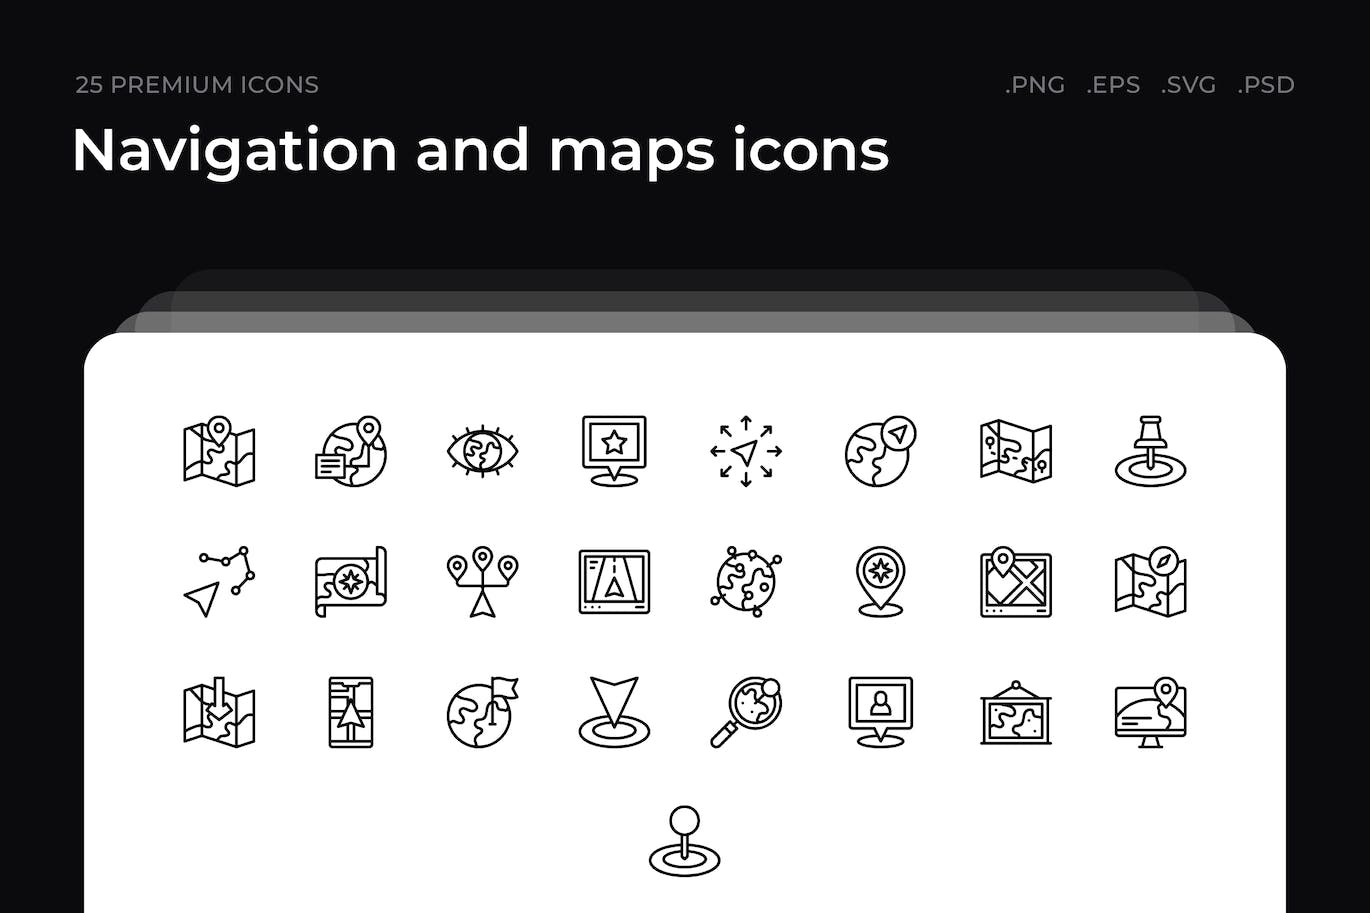 25枚导航和地图主题简约线条矢量图标 Navigation and maps icons 图标素材 第1张